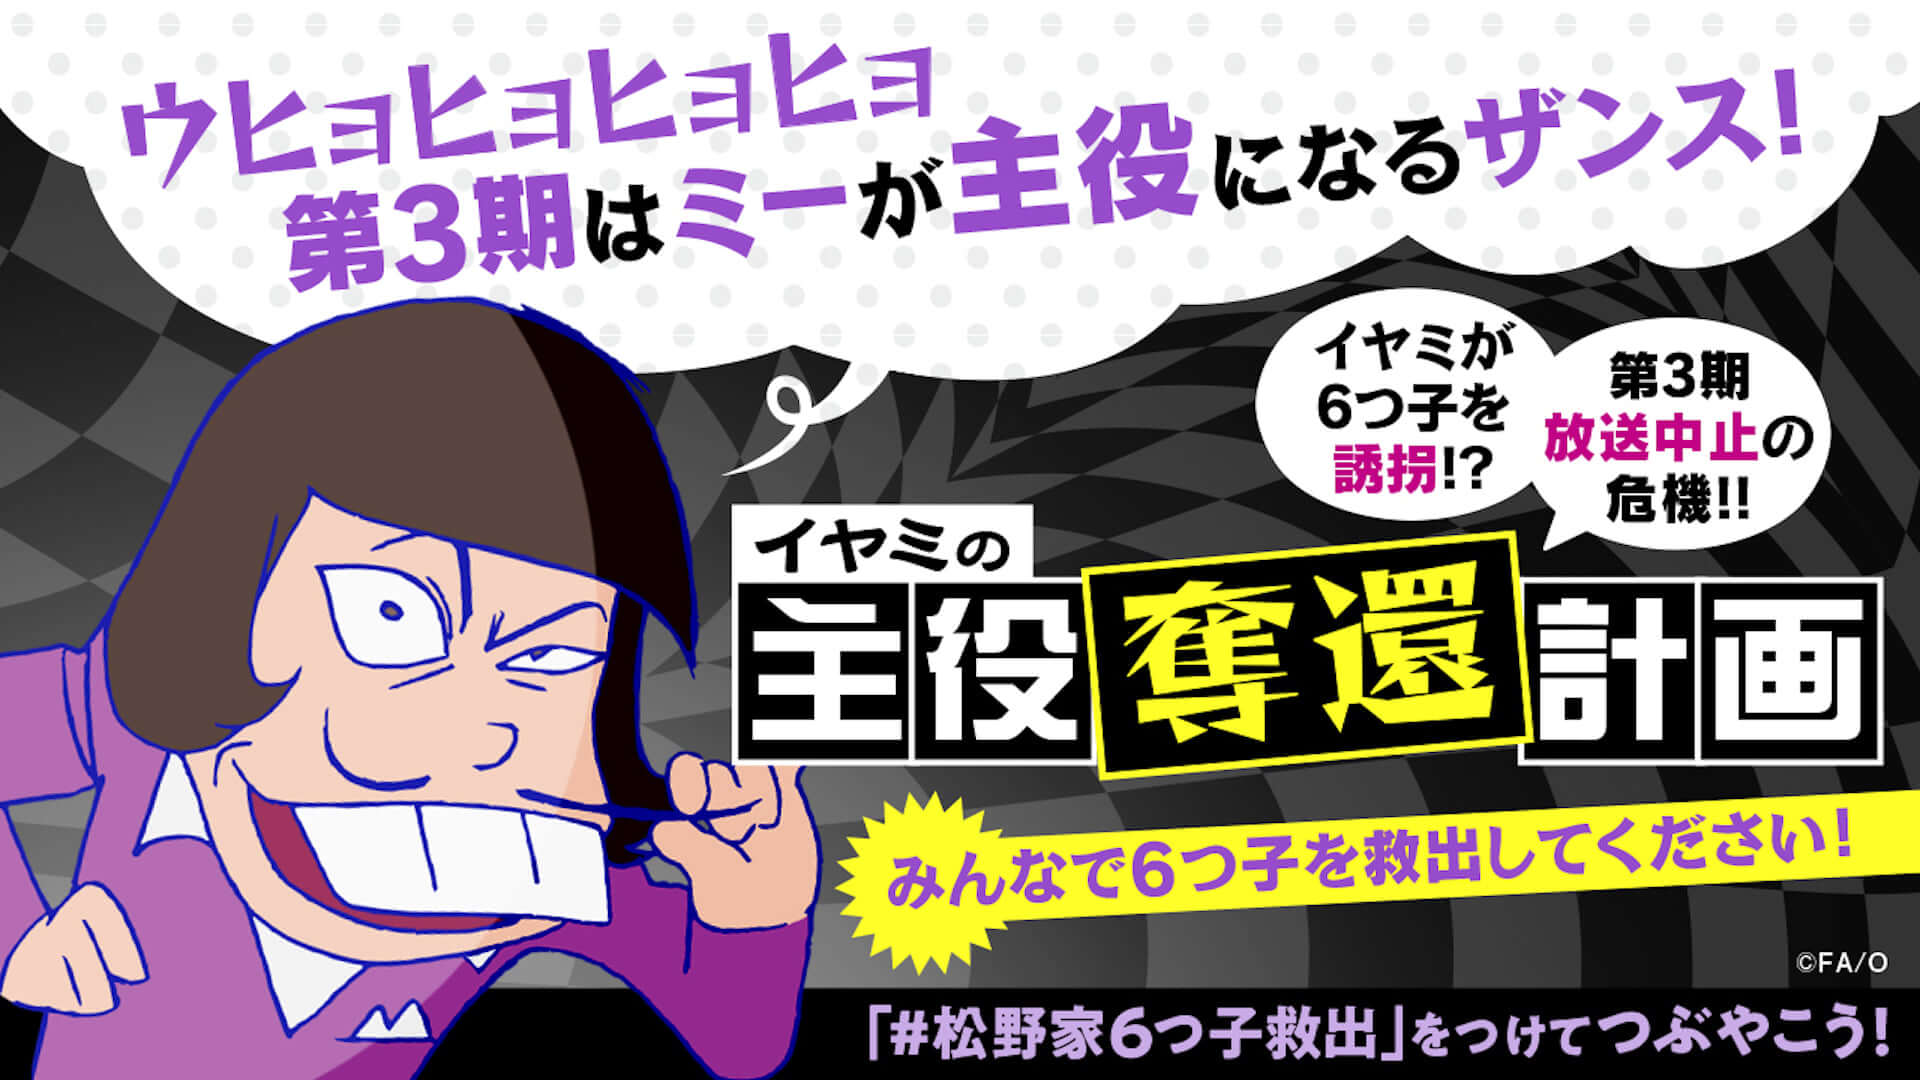 アニメ おそ松さん の6つ子を救出しよう Twitter連動企画 イヤミの主役奪還計画 がスタート Qetic